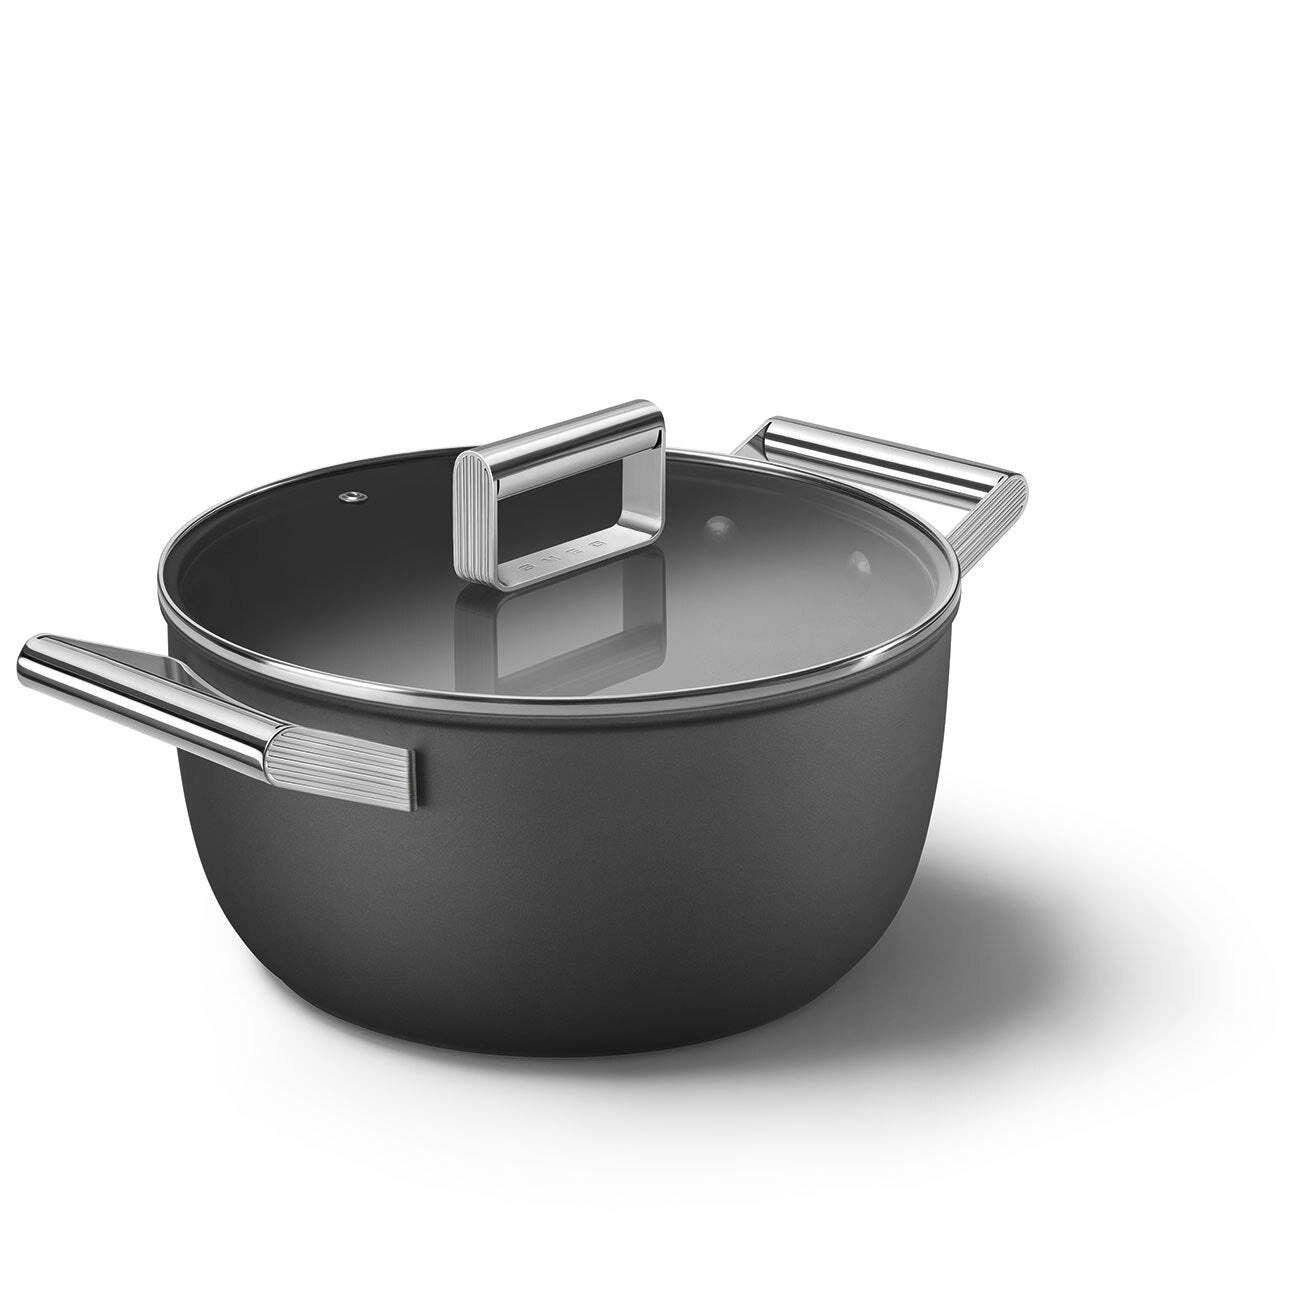 Smeg 5 qt Casserole Dish 9.5 with Lid - Black